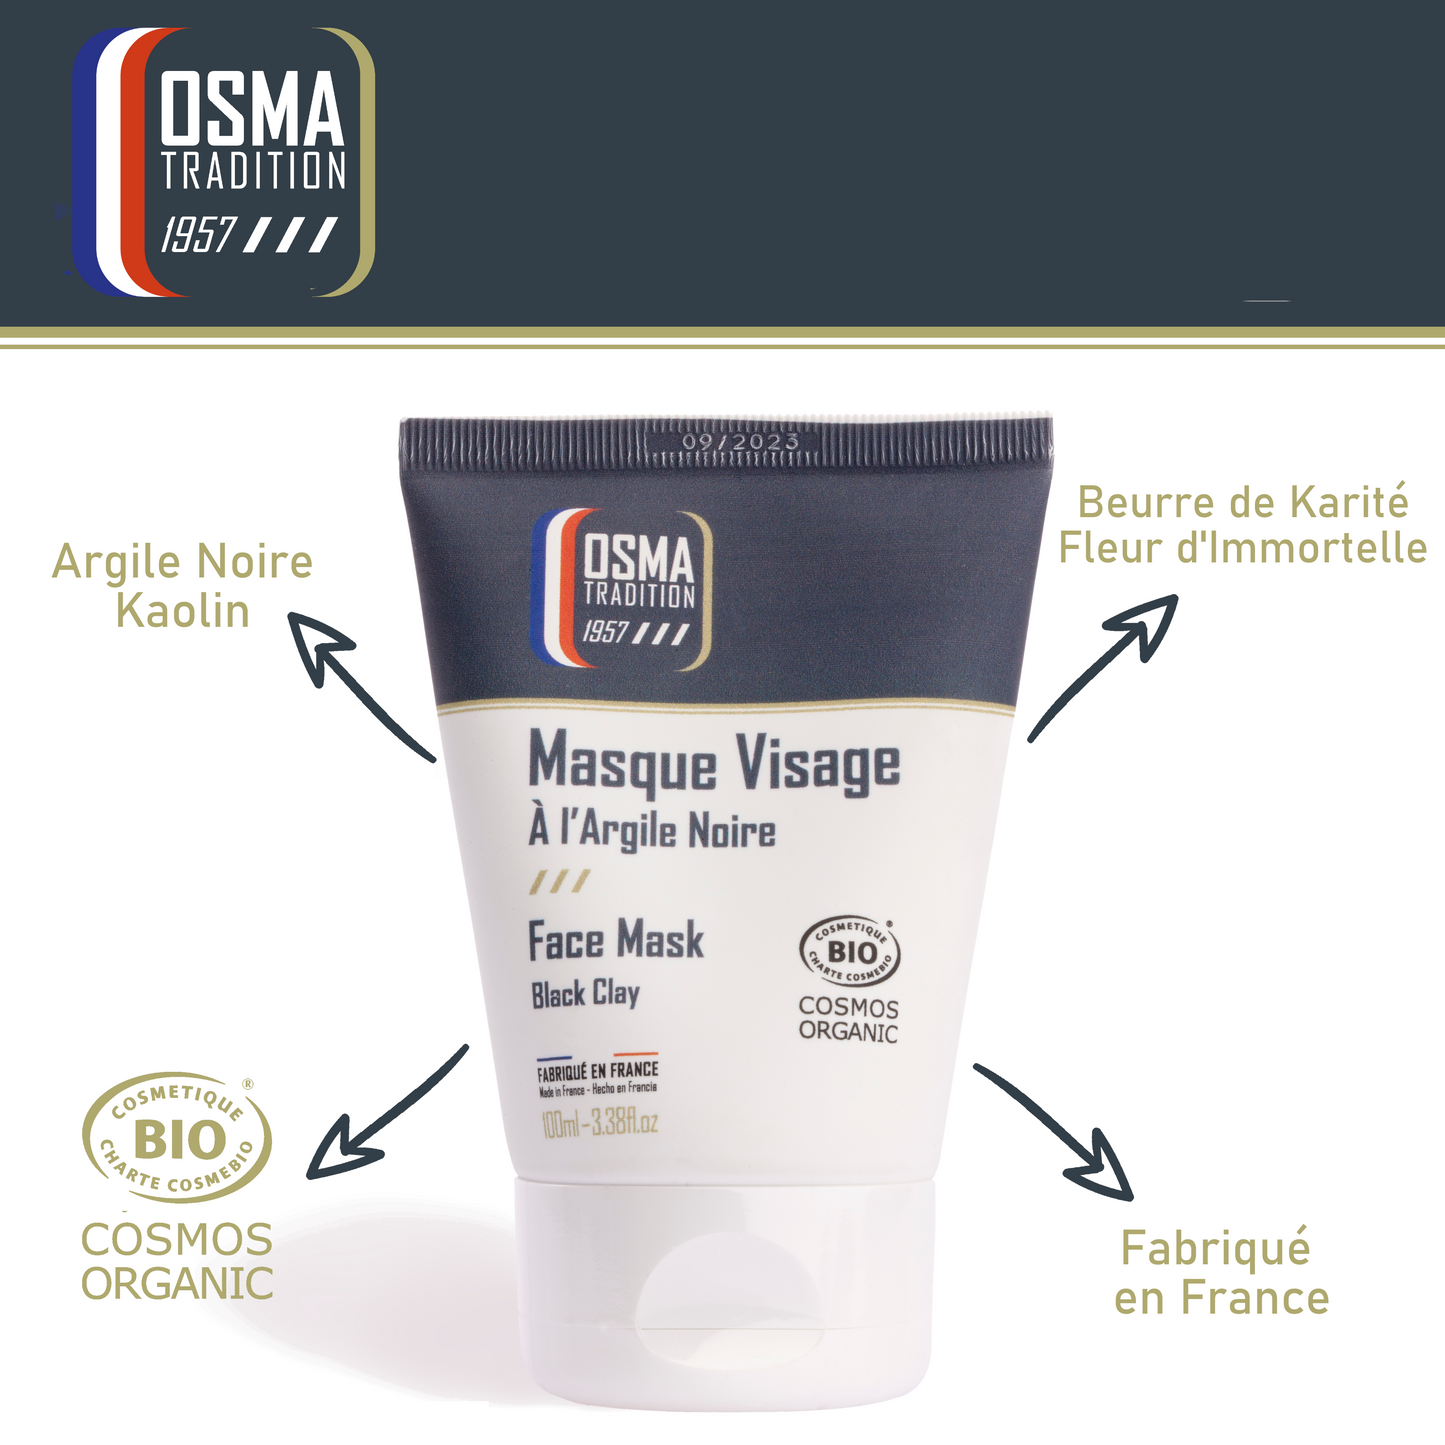 OSMA TRADITION - Masque Visage certifié COSMOS ORGANIC